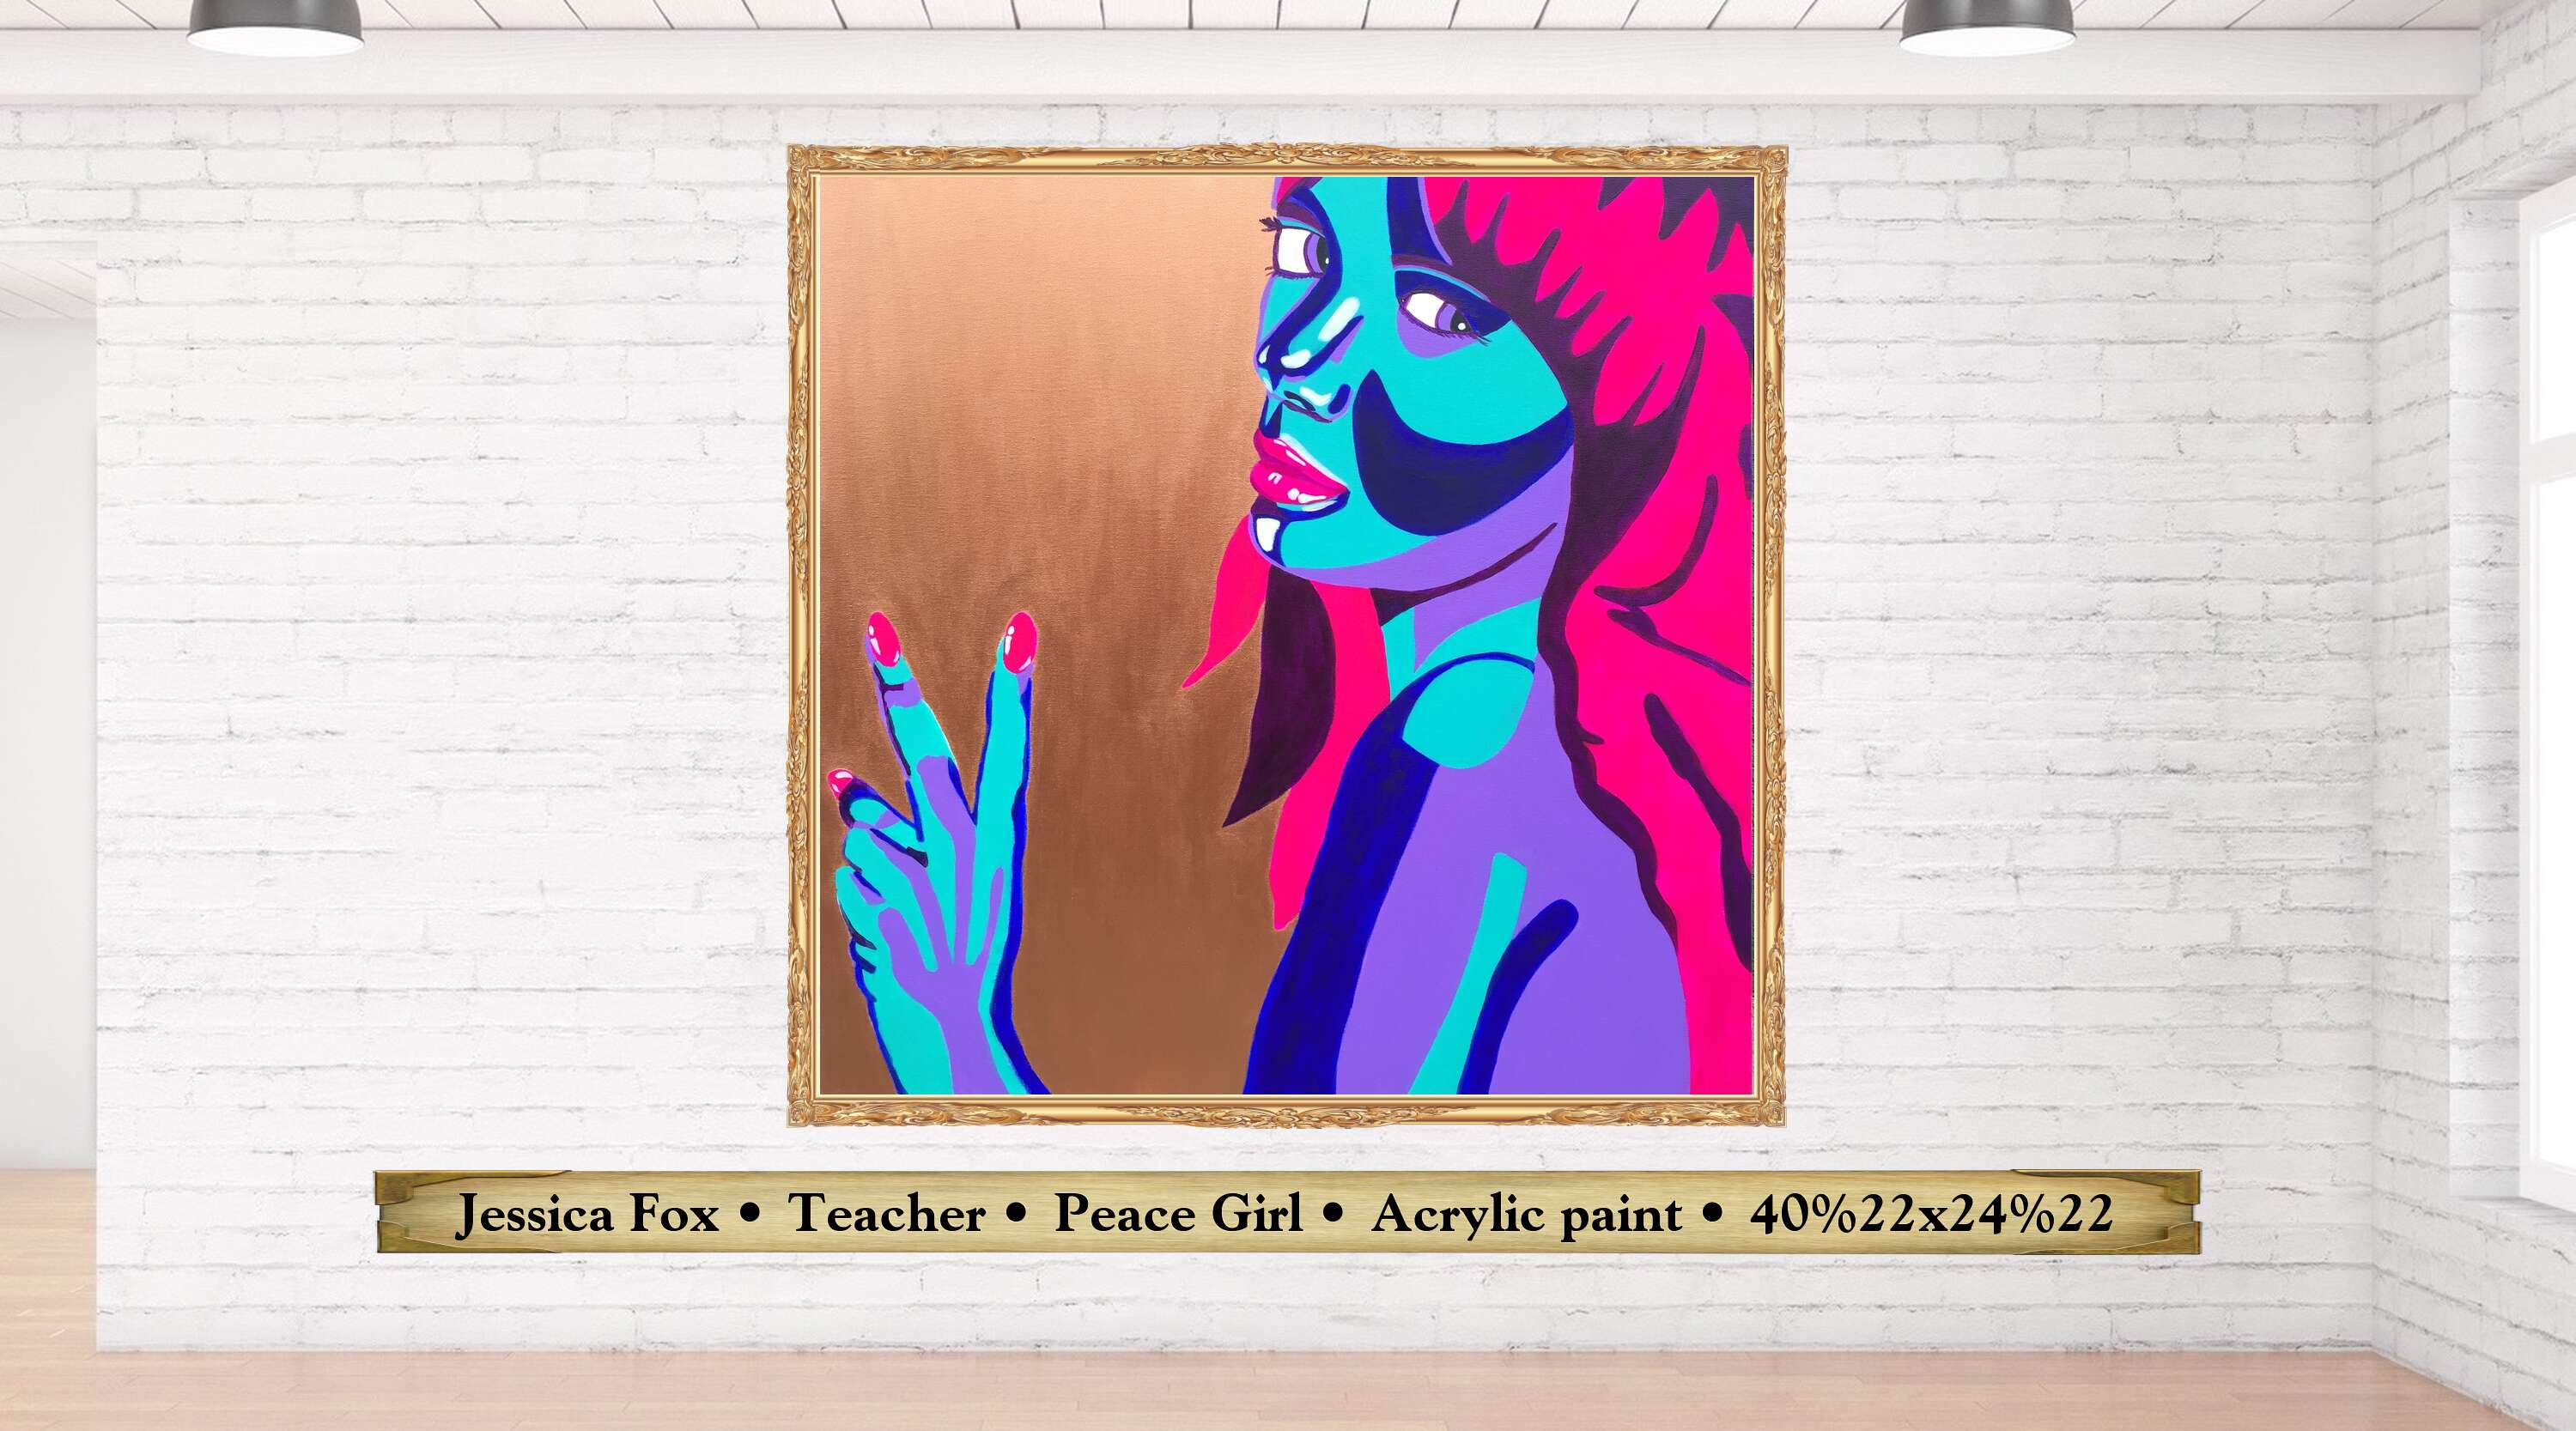 Jessica Fox • Teacher • Peace Girl • Acrylic paint • 40%22x24%22